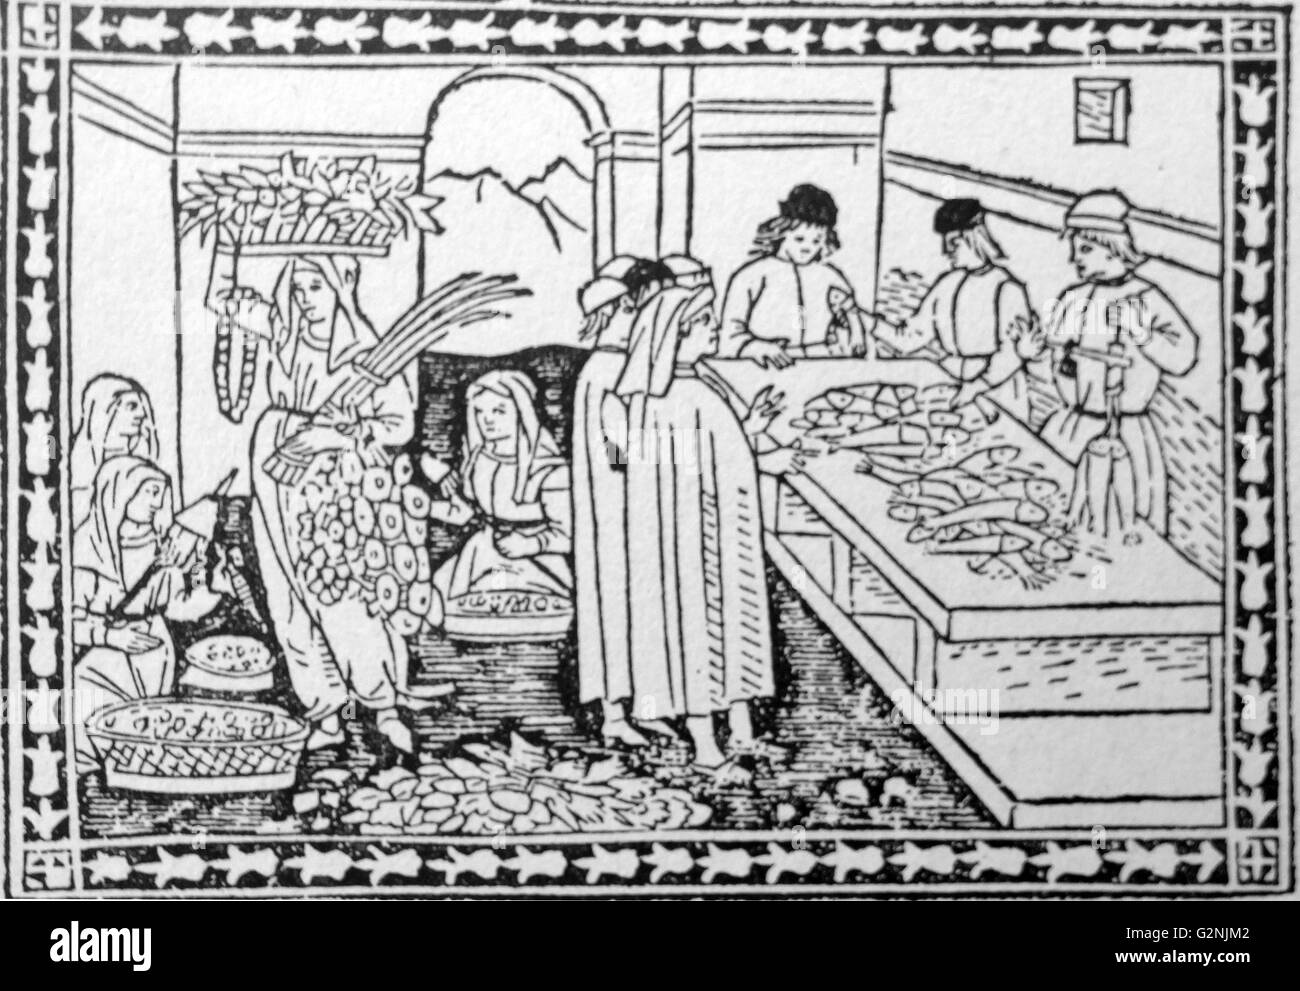 Gravure sur bois d'un marché de poisson et de légumes dans la Florence médiévale. Dans la scène du marché, deux femmes sont assis, tandis qu'un autre thread spinning transporte un assortiment de produits frais. En date du 15e siècle Banque D'Images